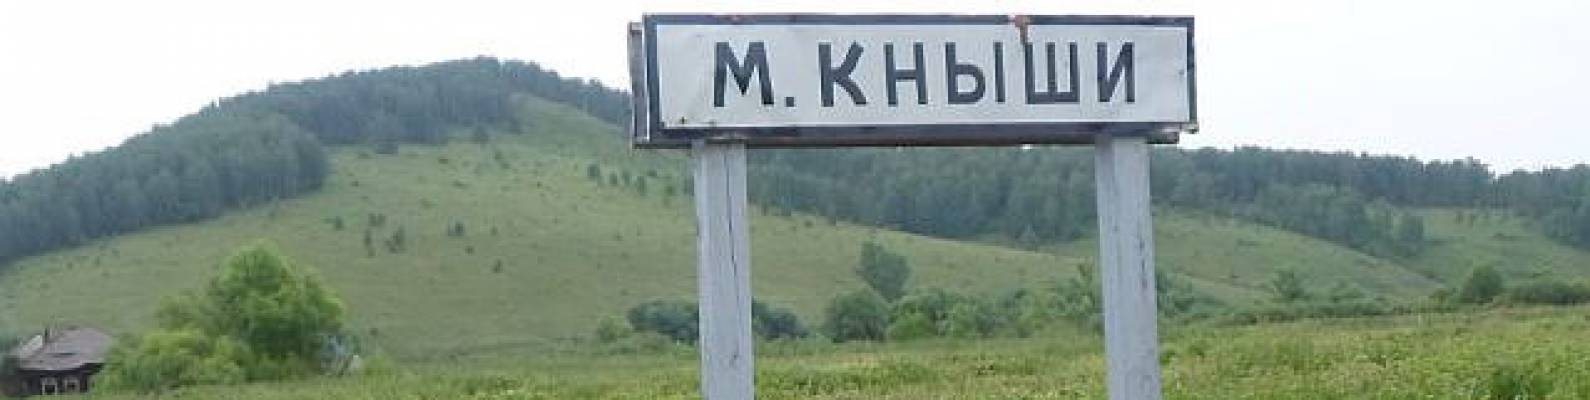  село Малые Кныши